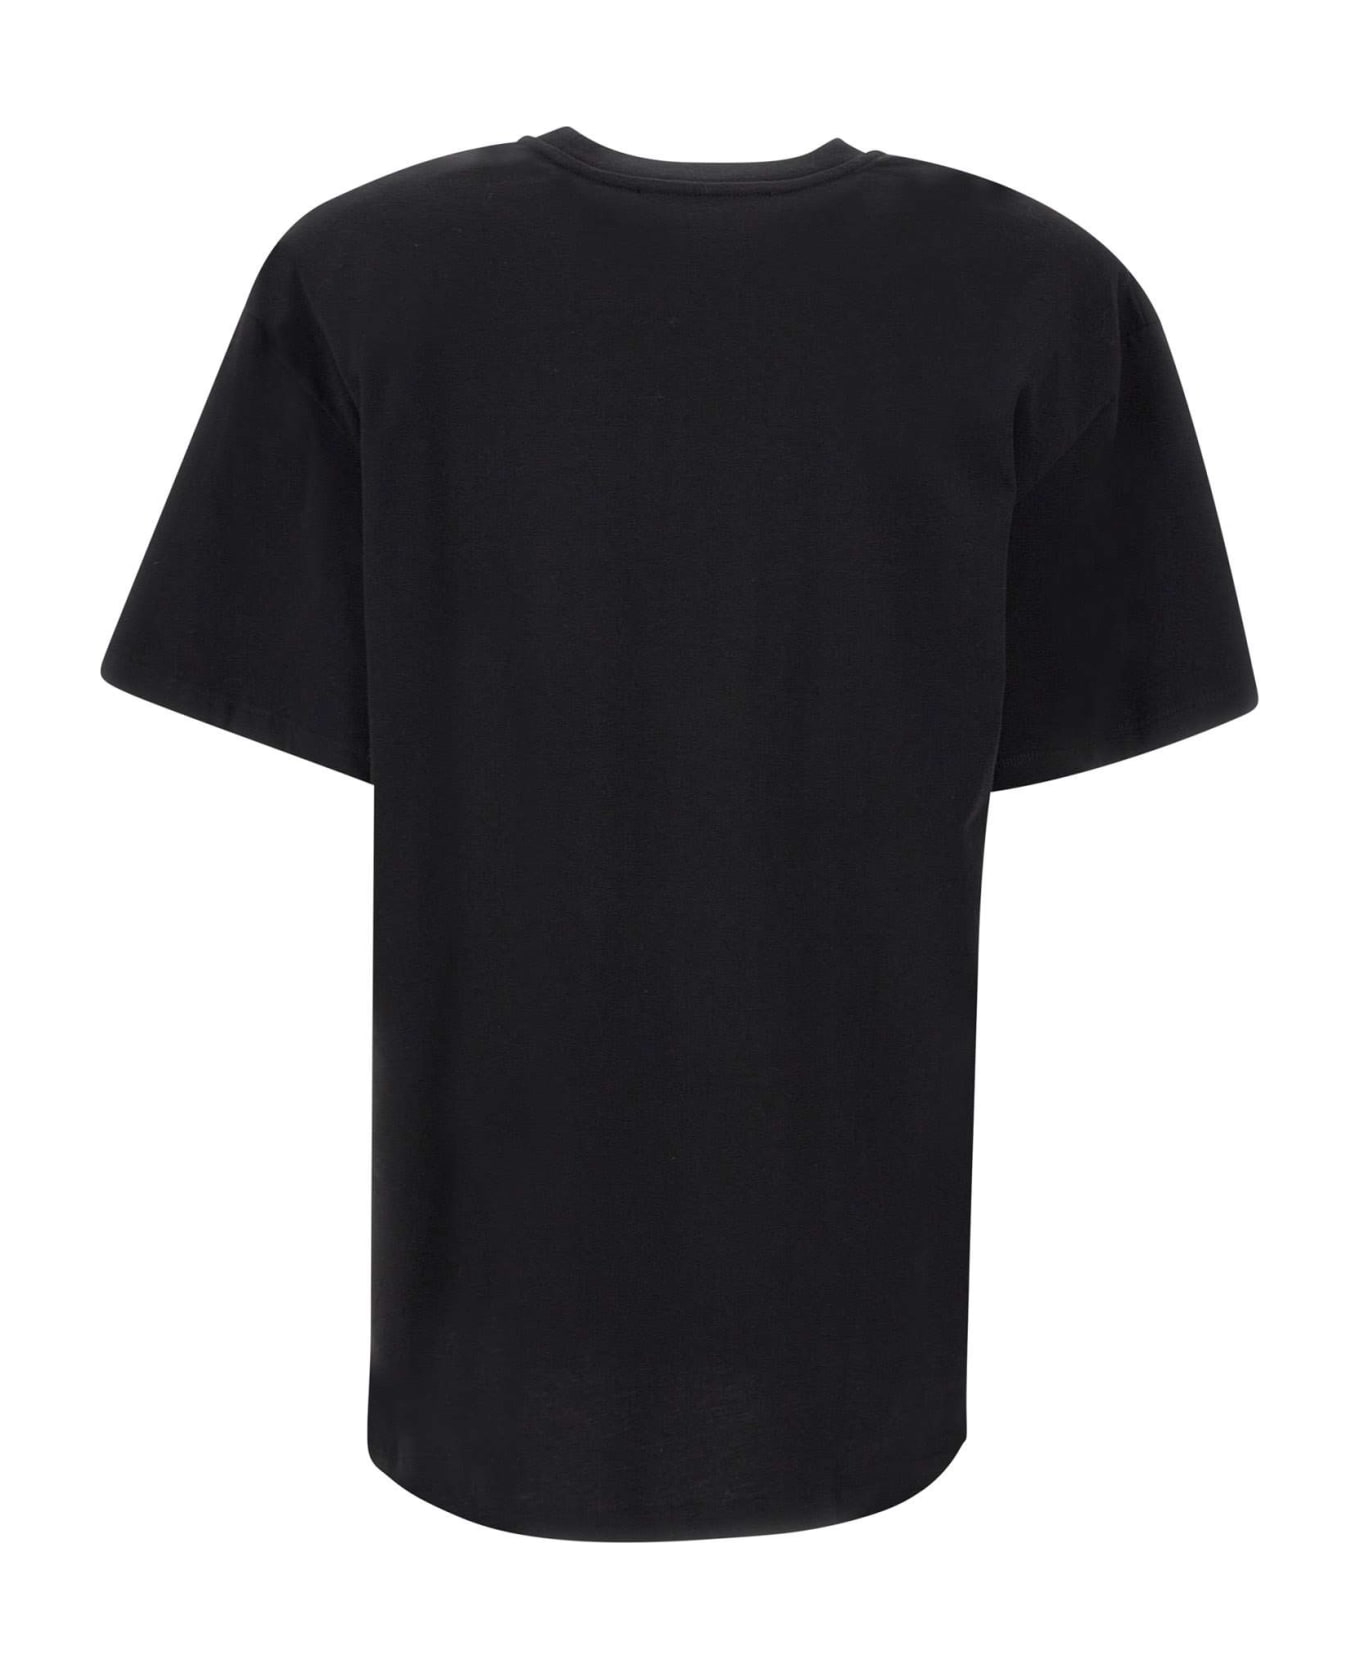 Rotate by Birger Christensen 'graddy' Cotton T-shirt - Nero Tシャツ